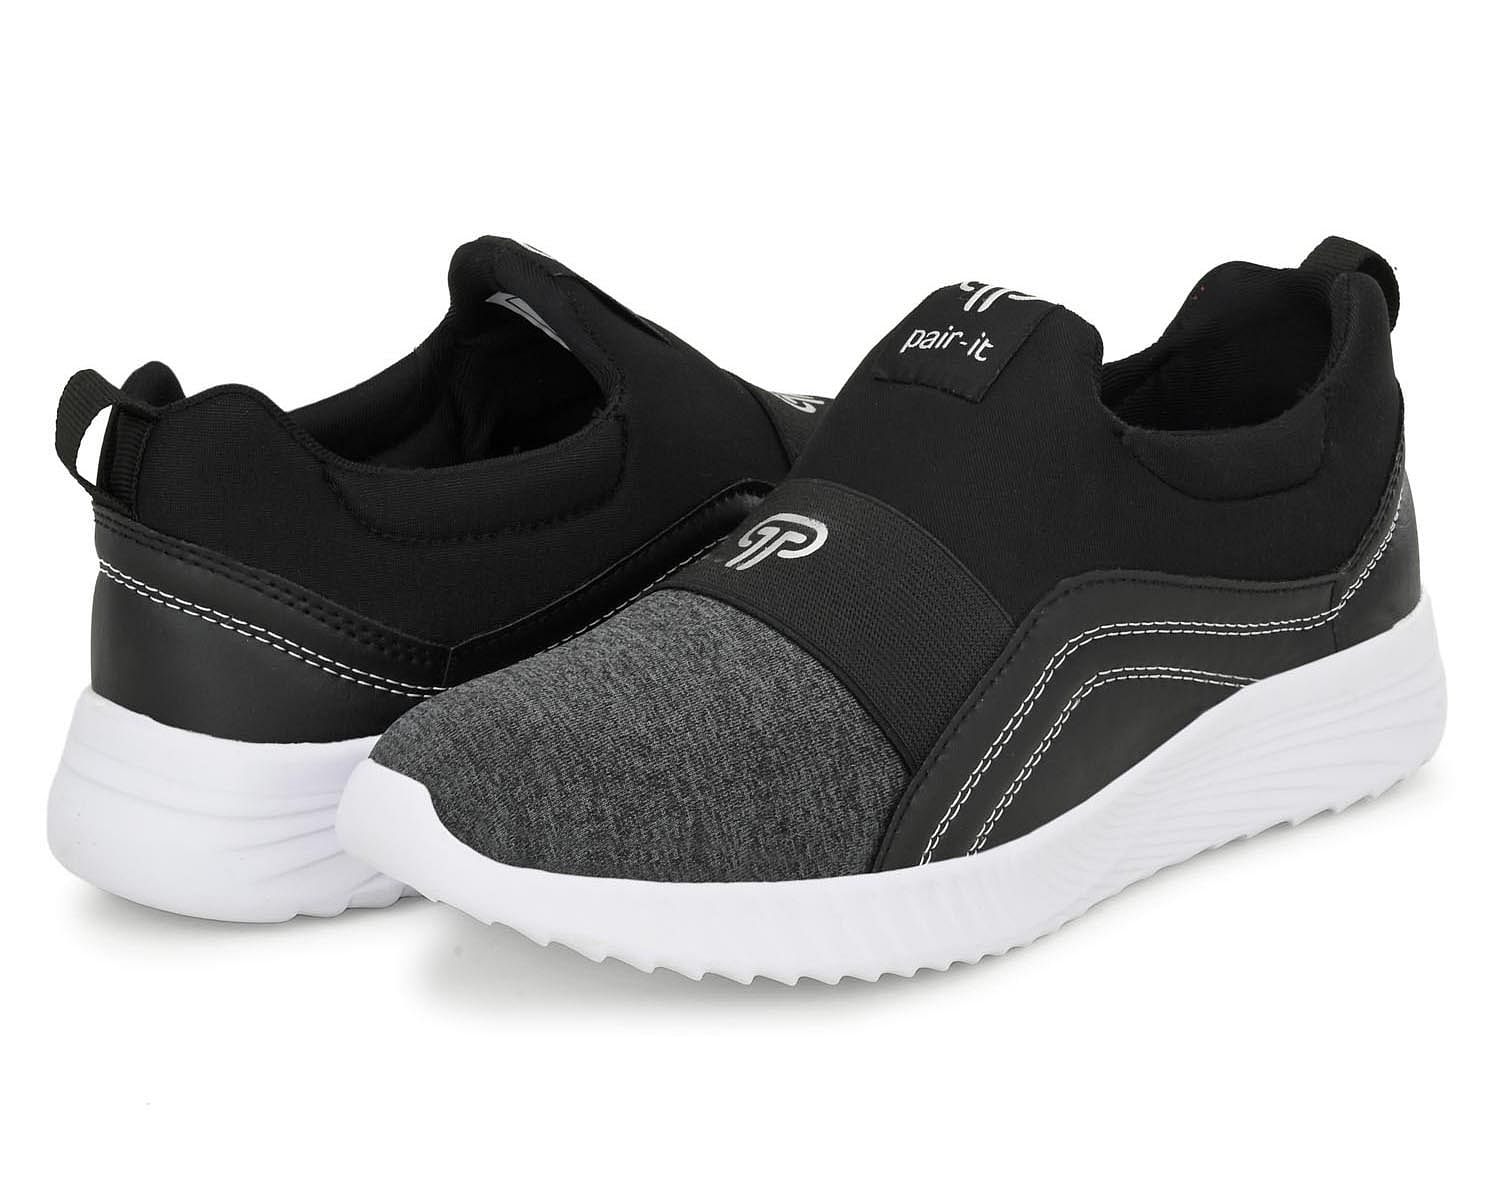 Pair-it Men's Sports Shoes-LZ-Presto-117-Black